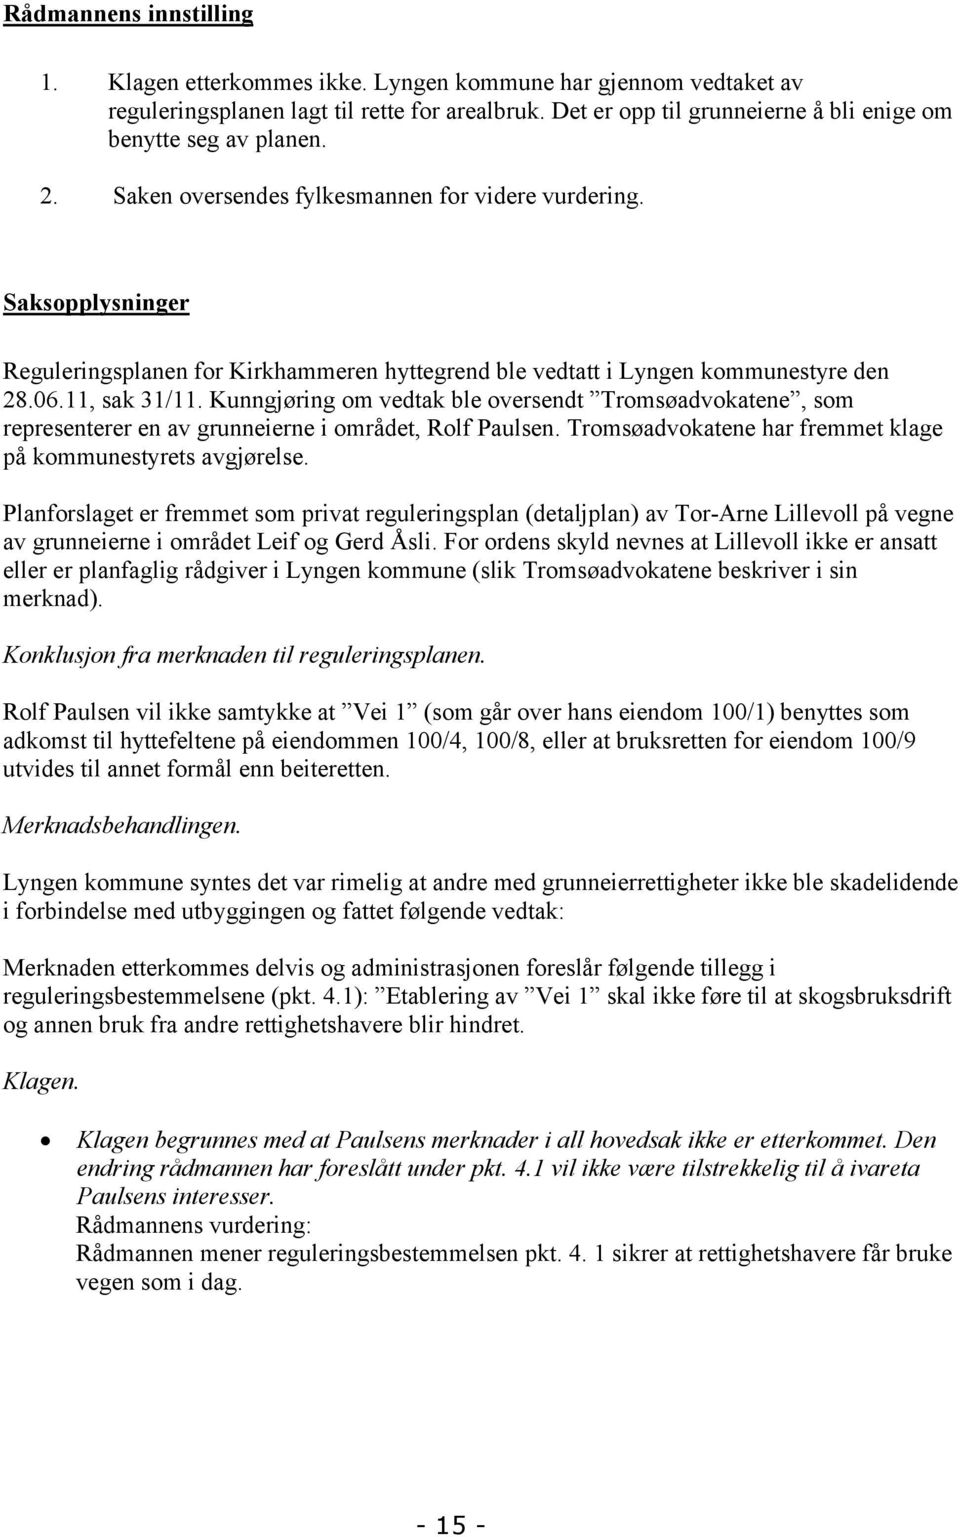 Saksopplysninger Reguleringsplanen for Kirkhammeren hyttegrend ble vedtatt i Lyngen kommunestyre den 28.06.11, sak 31/11.